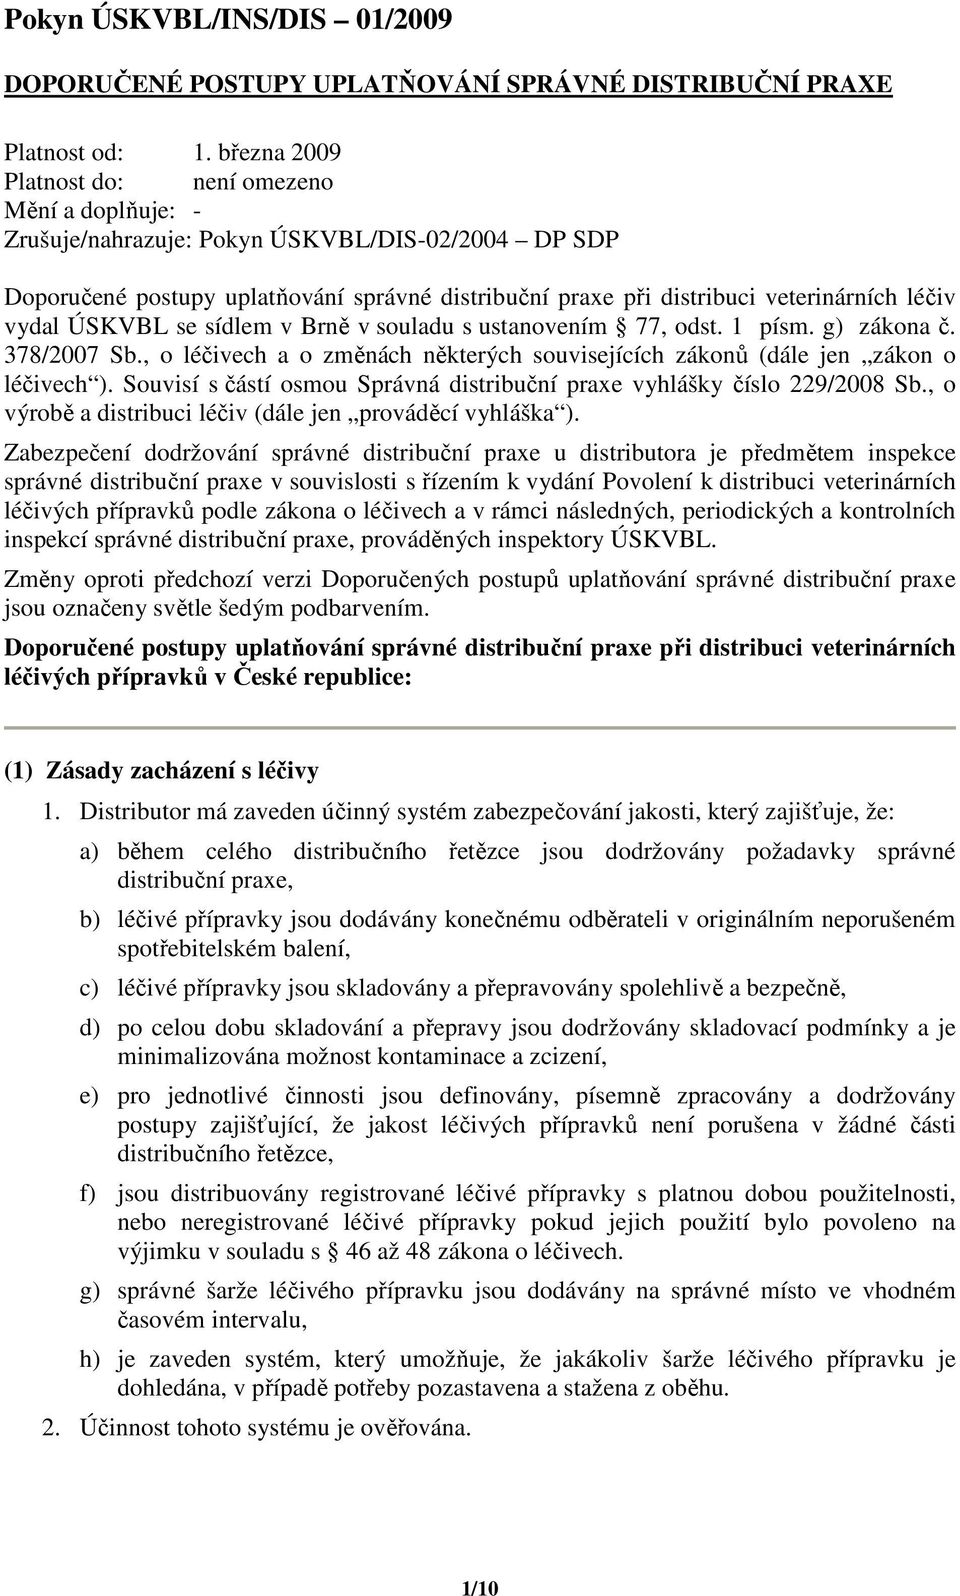 vydal ÚSKVBL se sídlem v Brně v souladu s ustanovením 77, odst. 1 písm. g) zákona č. 378/2007 Sb., o léčivech a o změnách některých souvisejících zákonů (dále jen zákon o léčivech ).